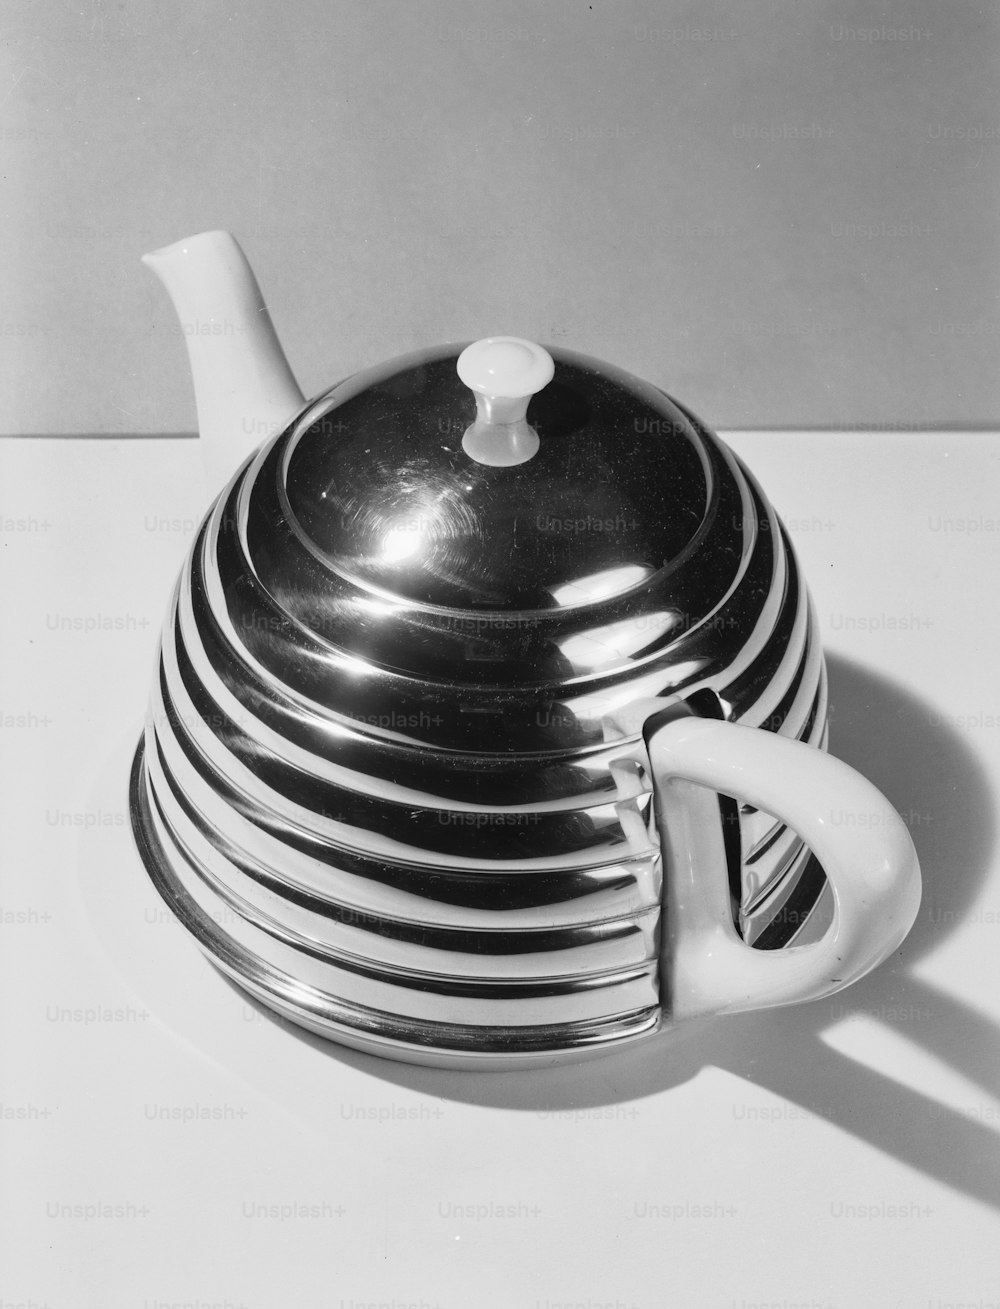 12 de novembro de 1954: Um bule de chá em um invólucro de metal que se parece com uma colmeia.  (Foto: Chaloner Woods/Getty Images)